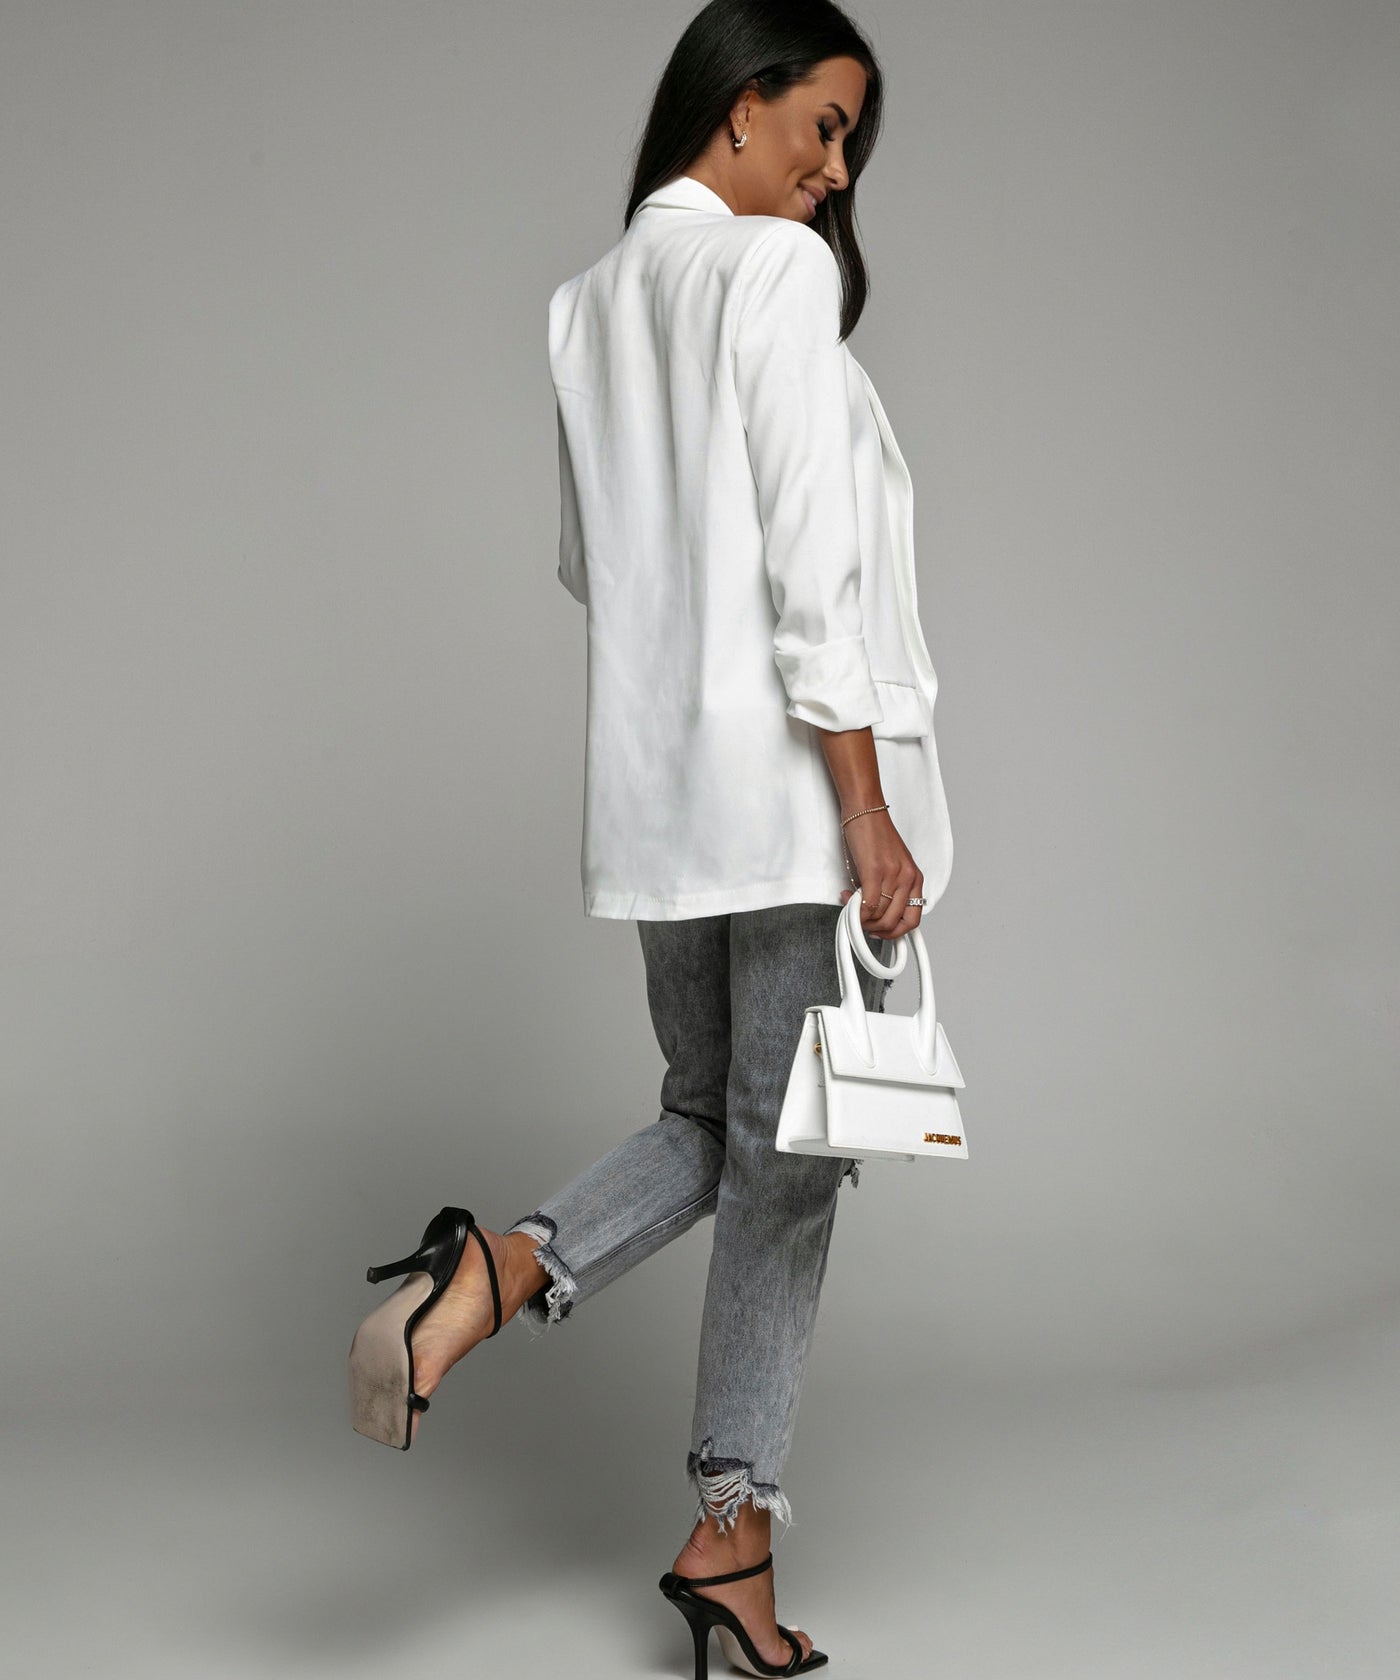 Blazer Mykonos Weiß  Ladypolitan - Fashion Onlineshop für Damen   